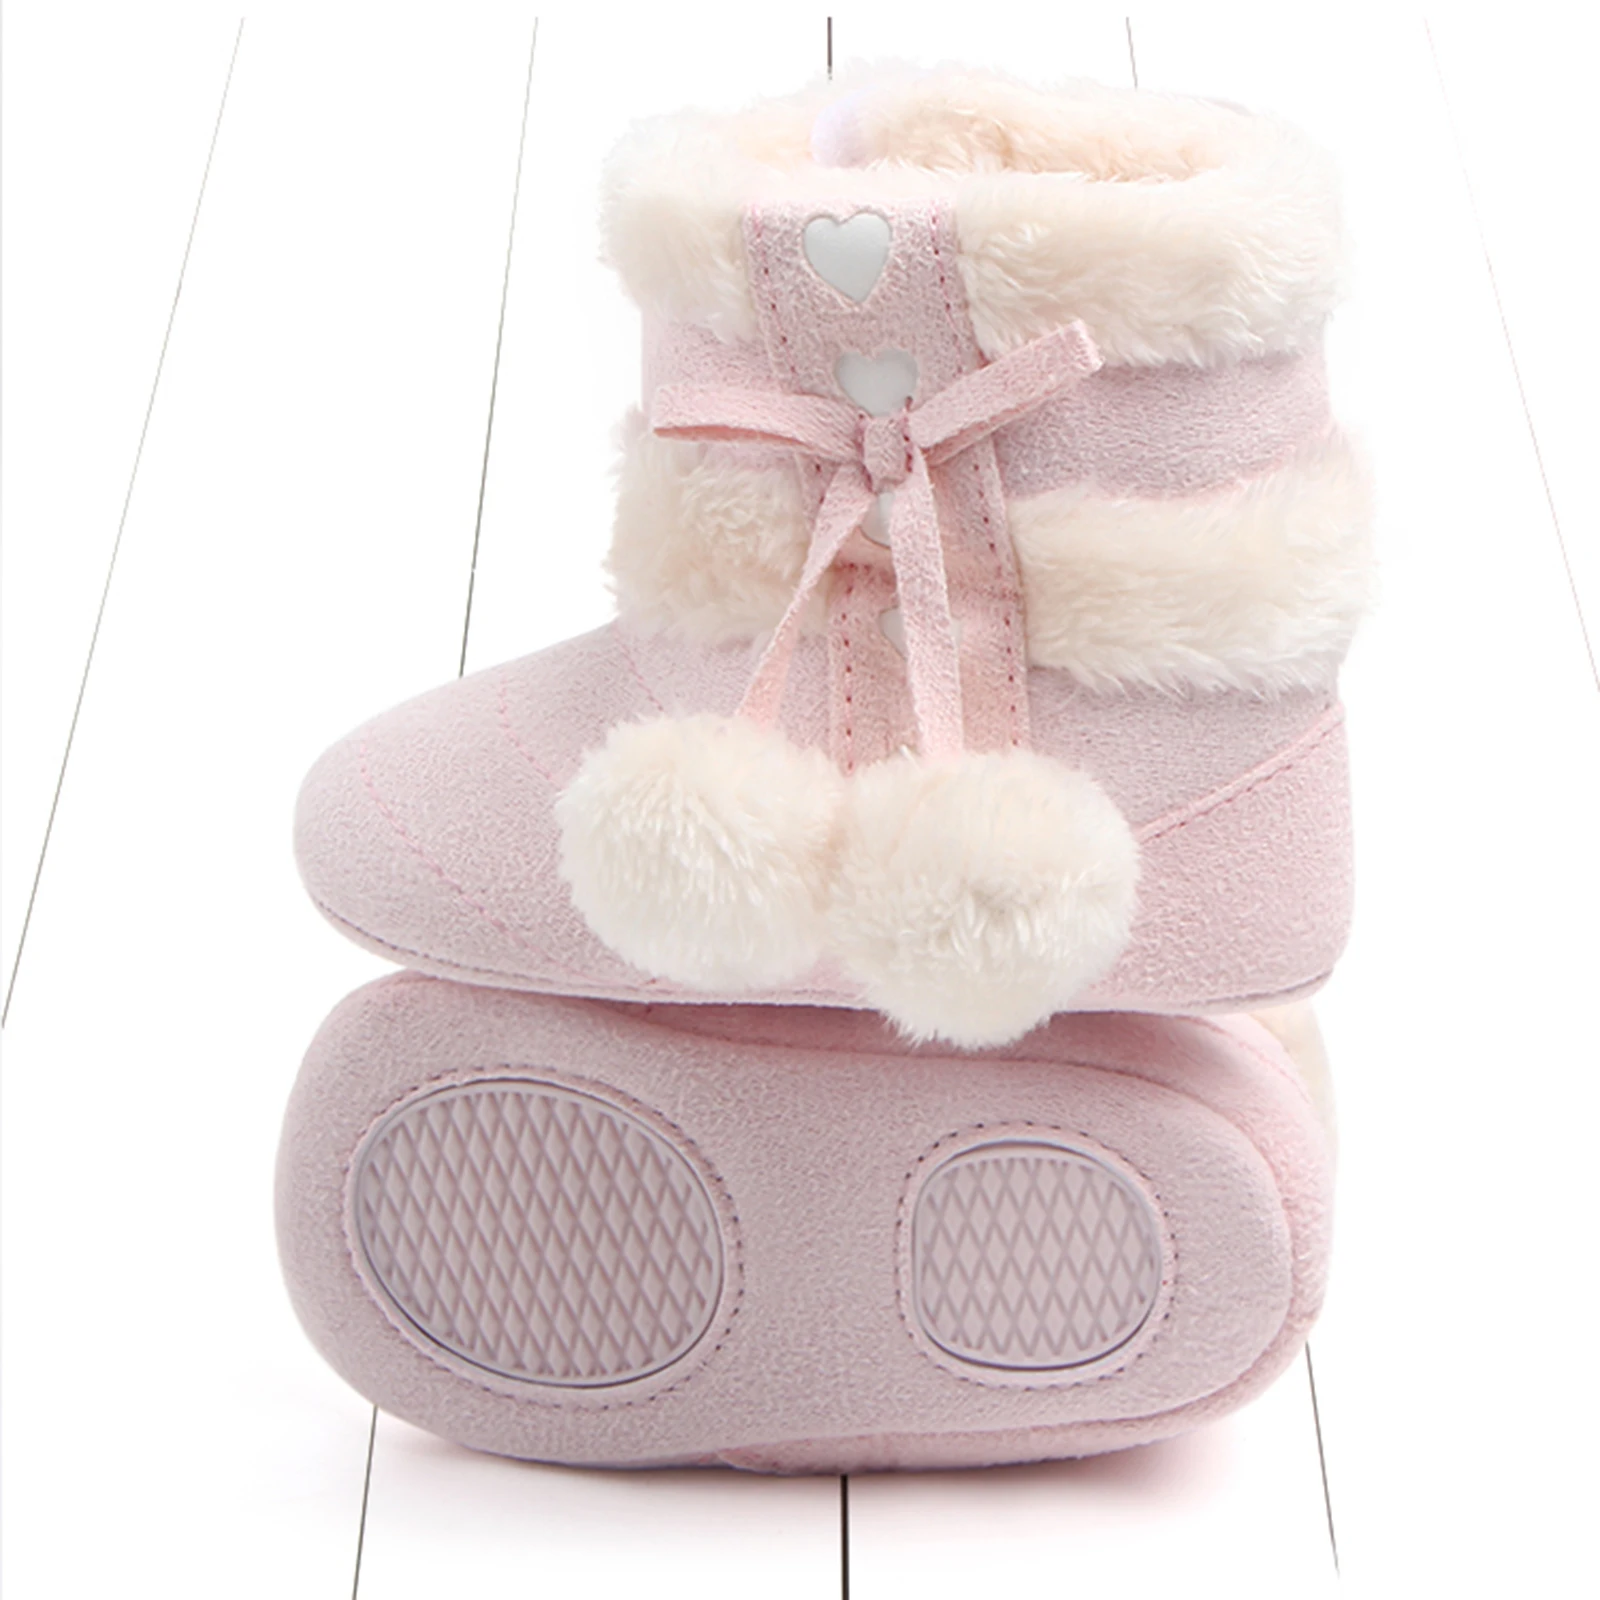 Stivali invernali per neonate stivali invernali con fiocco carino scarpe da neve con pompon di peluche scarpe da passeggio per bambini caldi per neonati